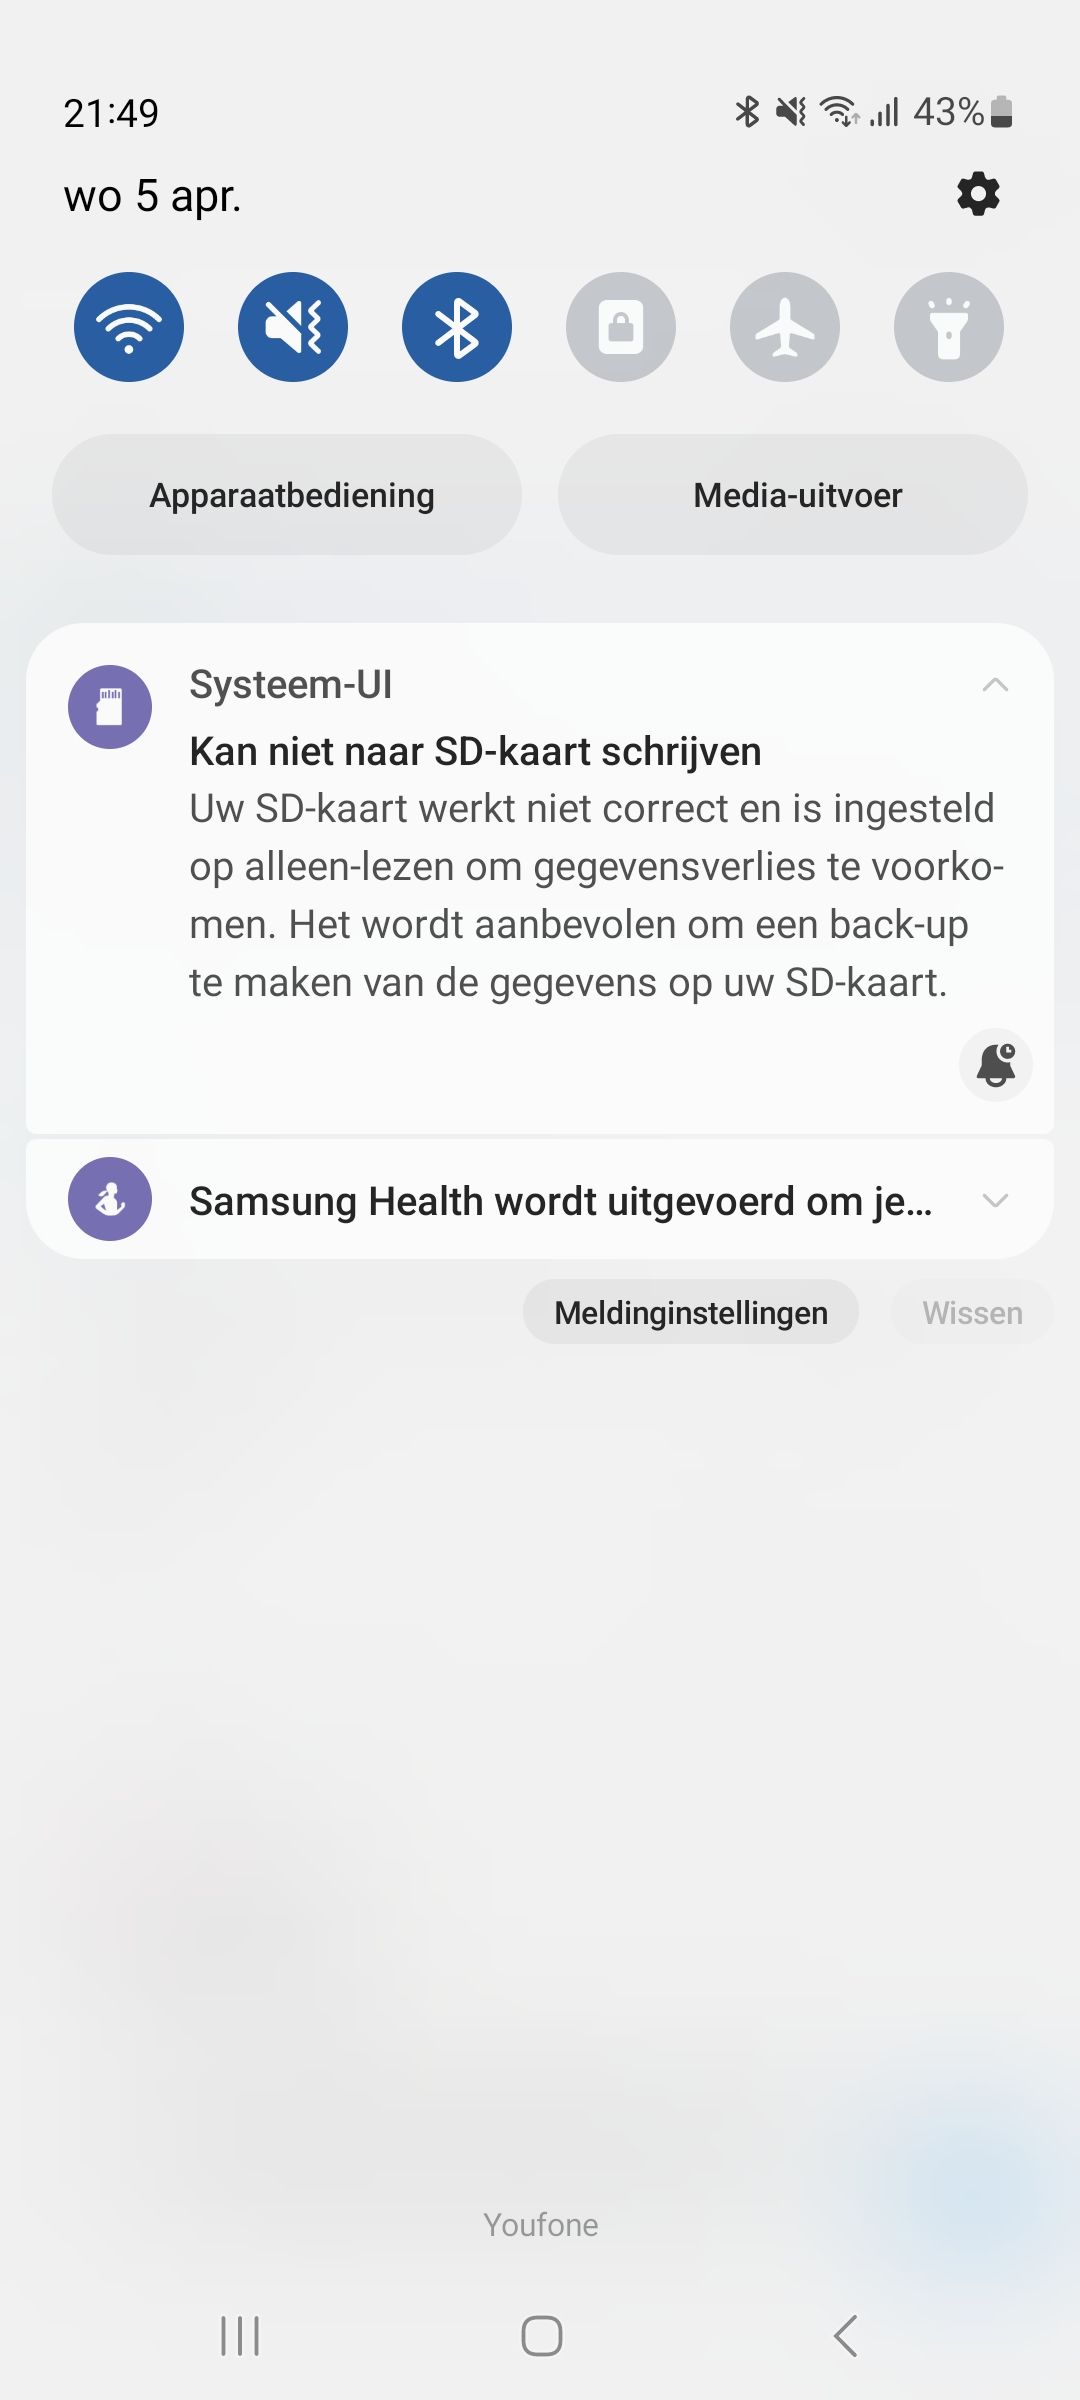 SD- kaart werkt niet meer update?! - Samsung Community